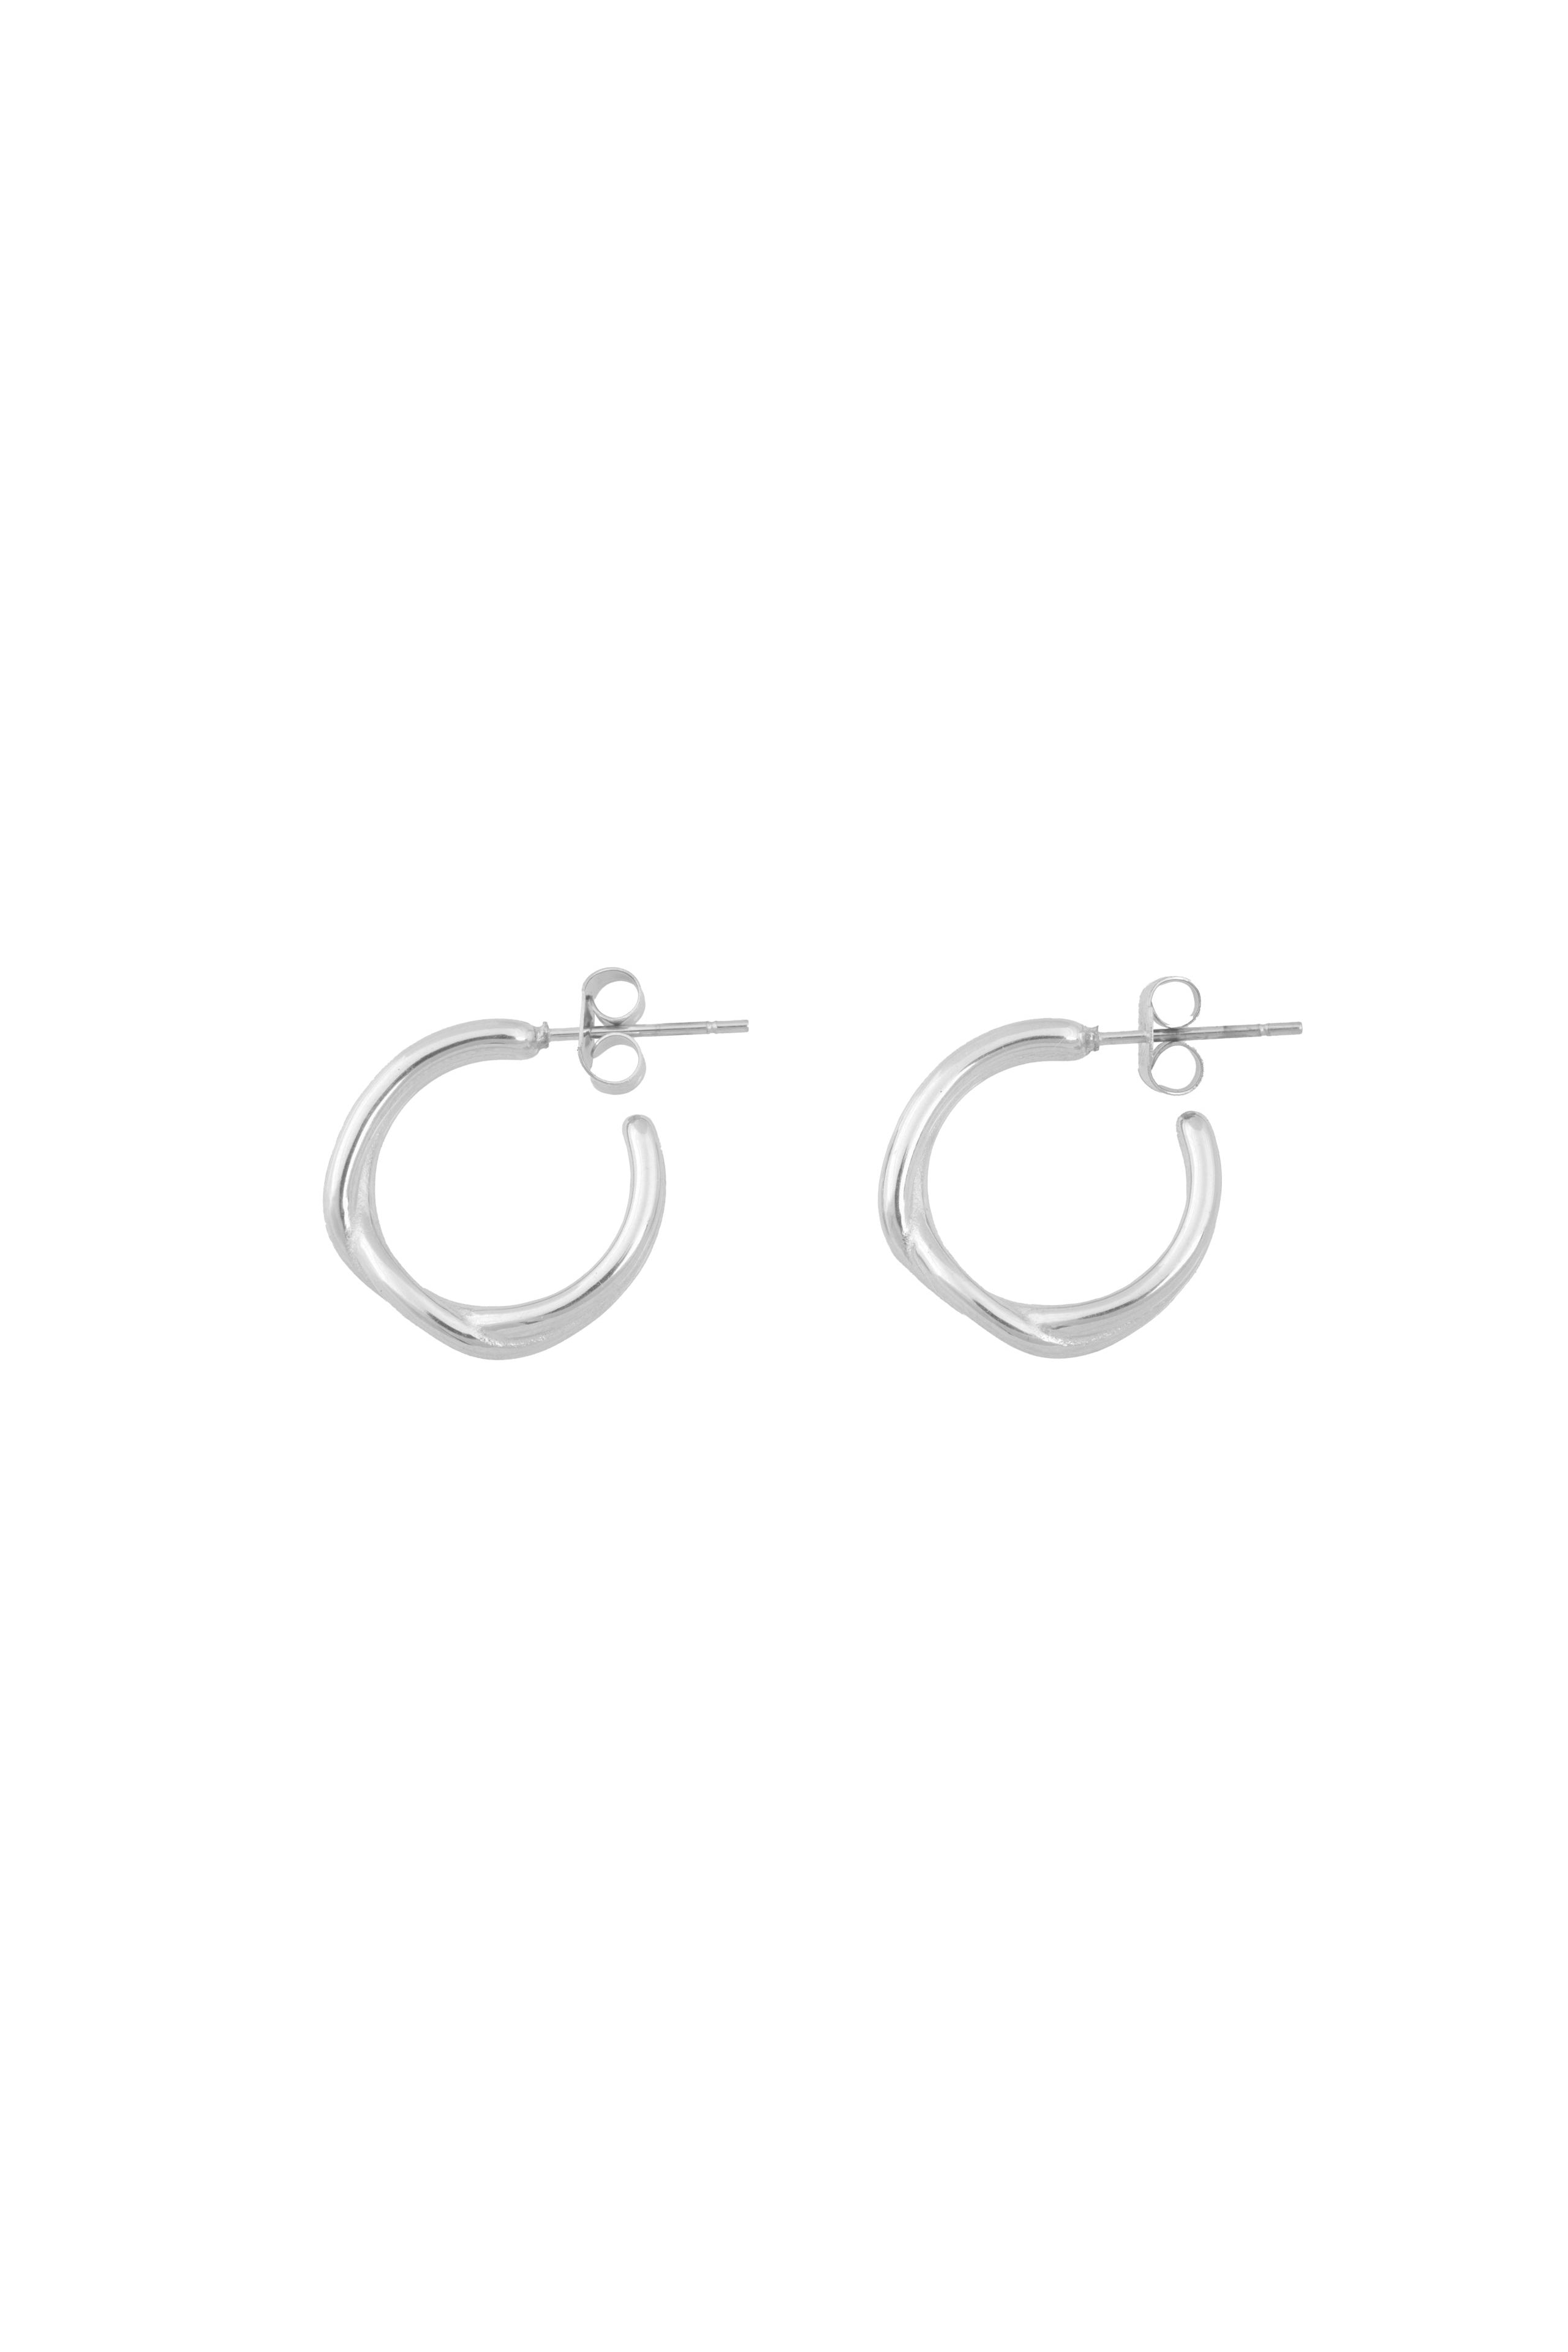 Twine Earrings - Silver